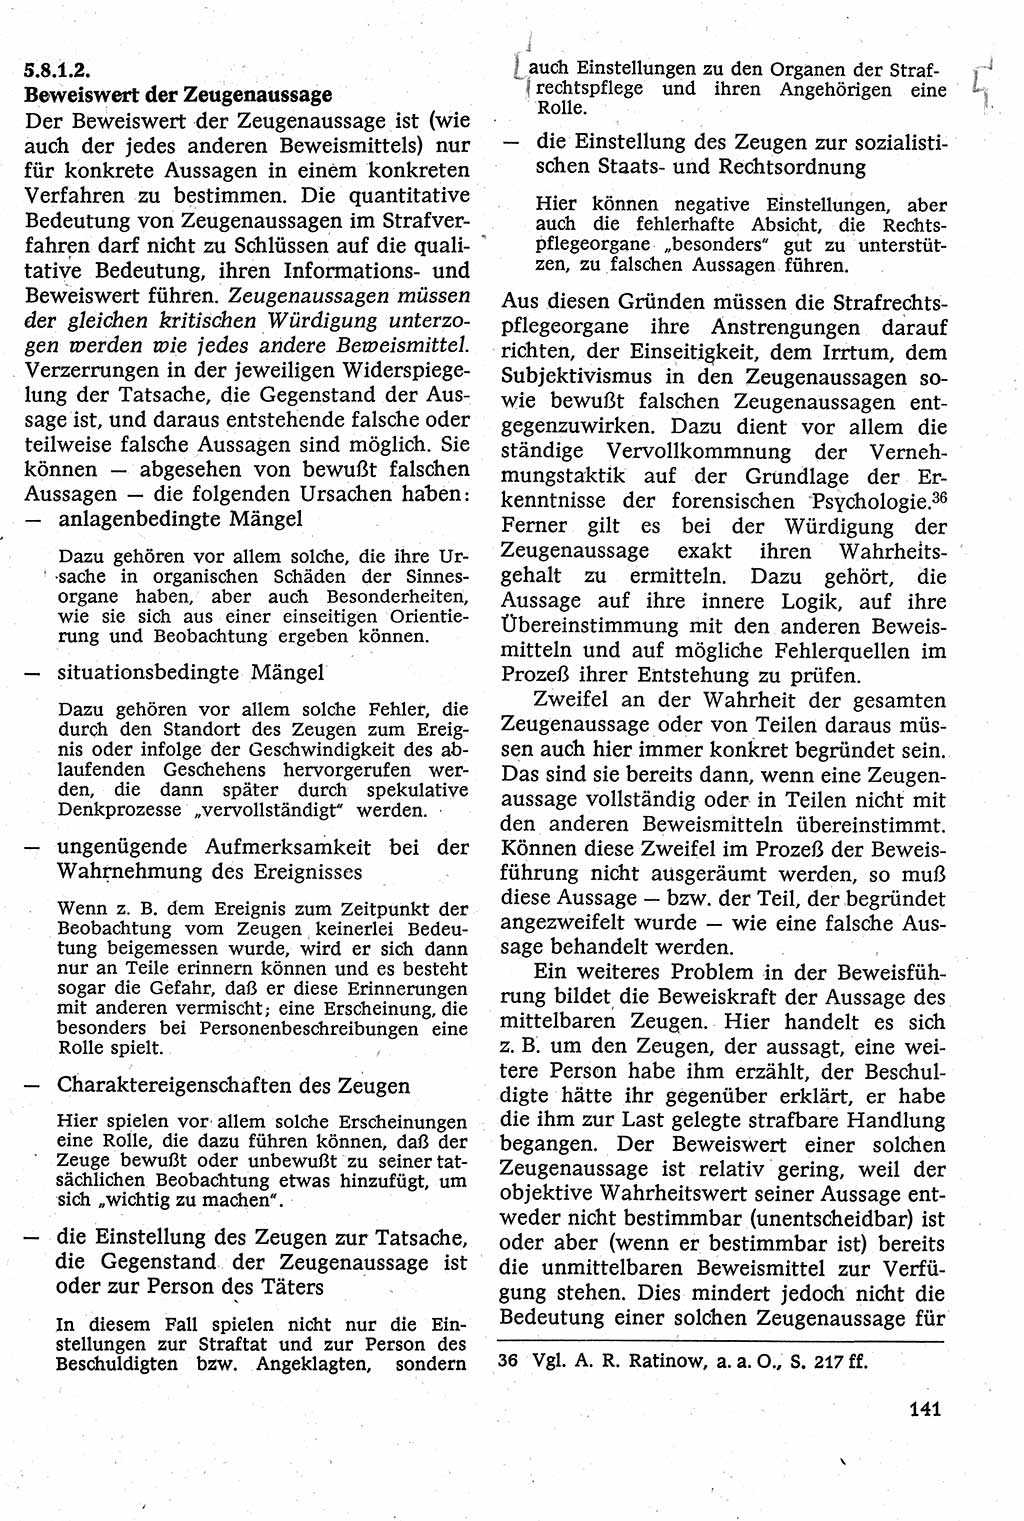 Strafverfahrensrecht [Deutsche Demokratische Republik (DDR)], Lehrbuch 1982, Seite 141 (Strafverf.-R. DDR Lb. 1982, S. 141)